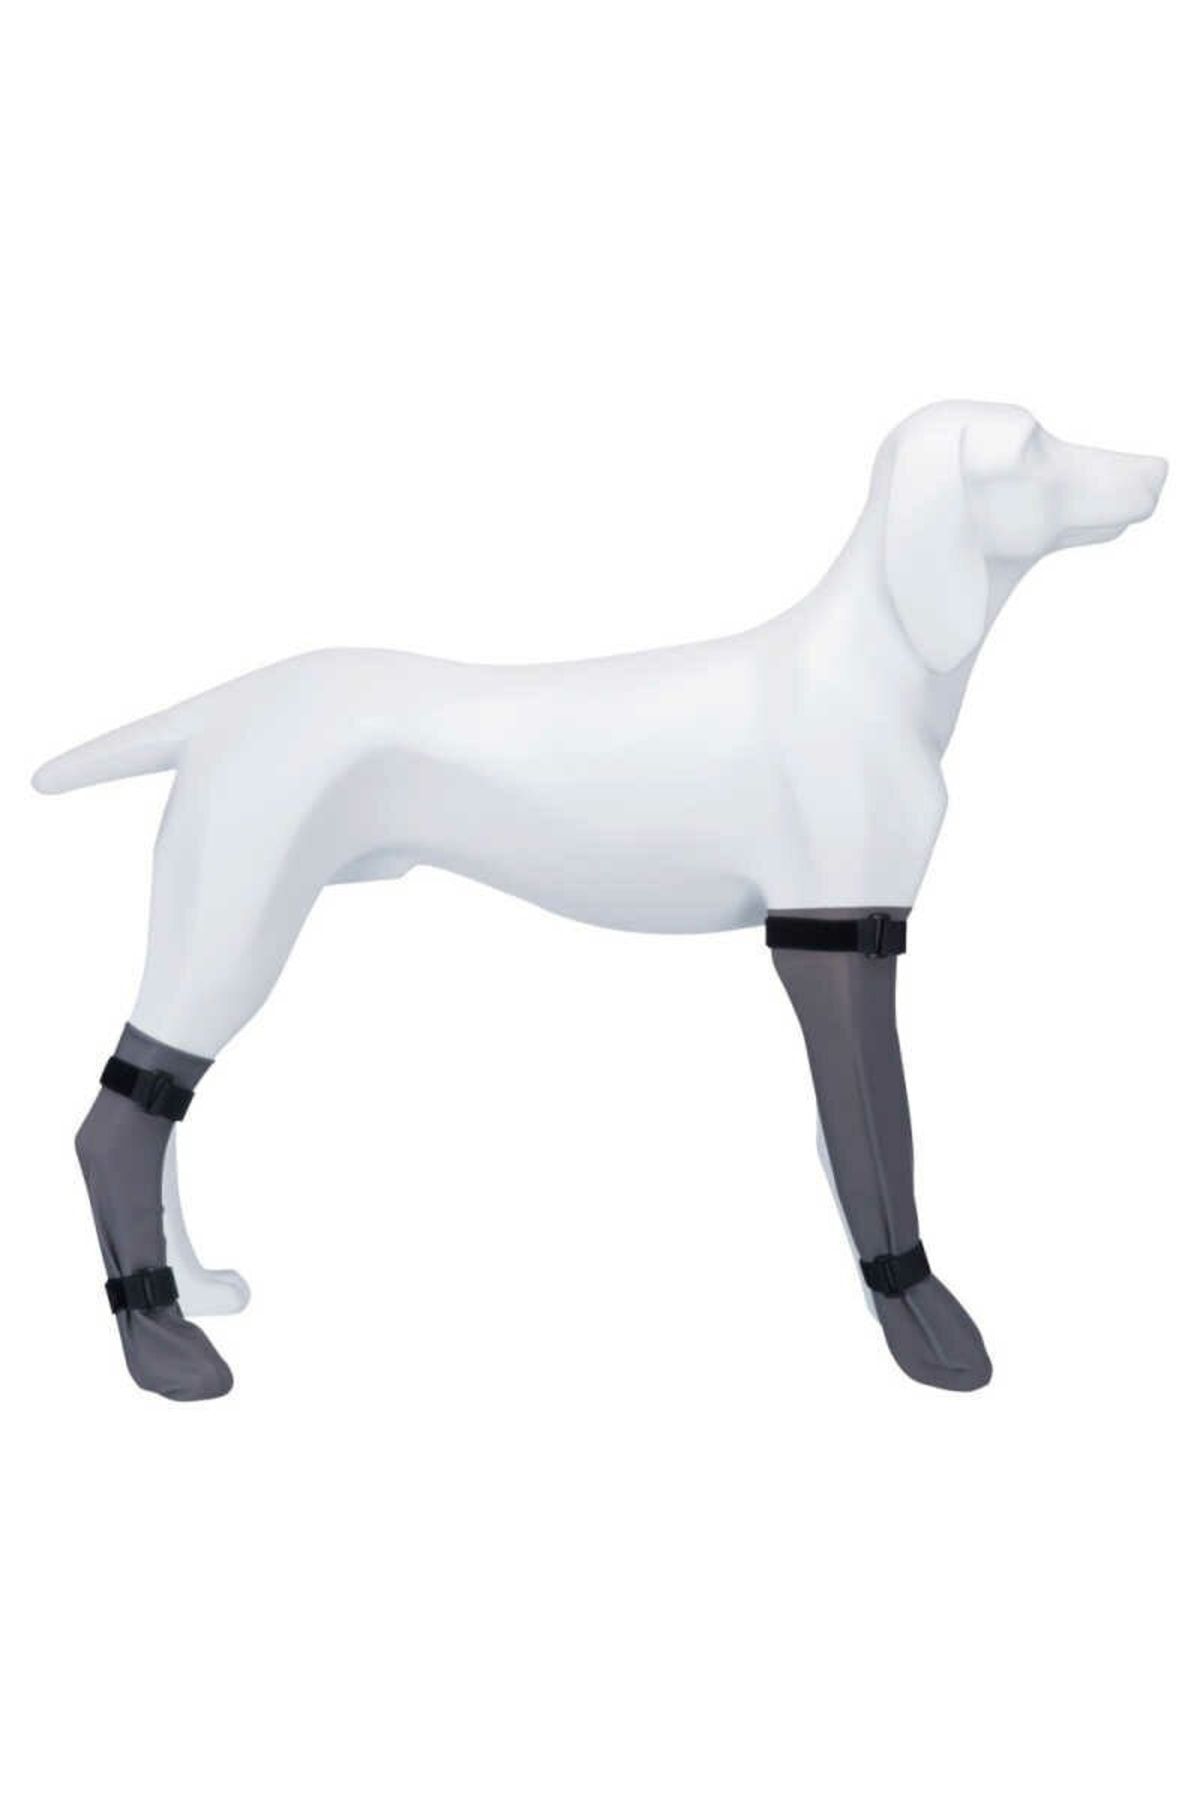 Trixie Köpek Çorabı, Su Geçirmez, 1 Adet, L:10cm/40cm Gri